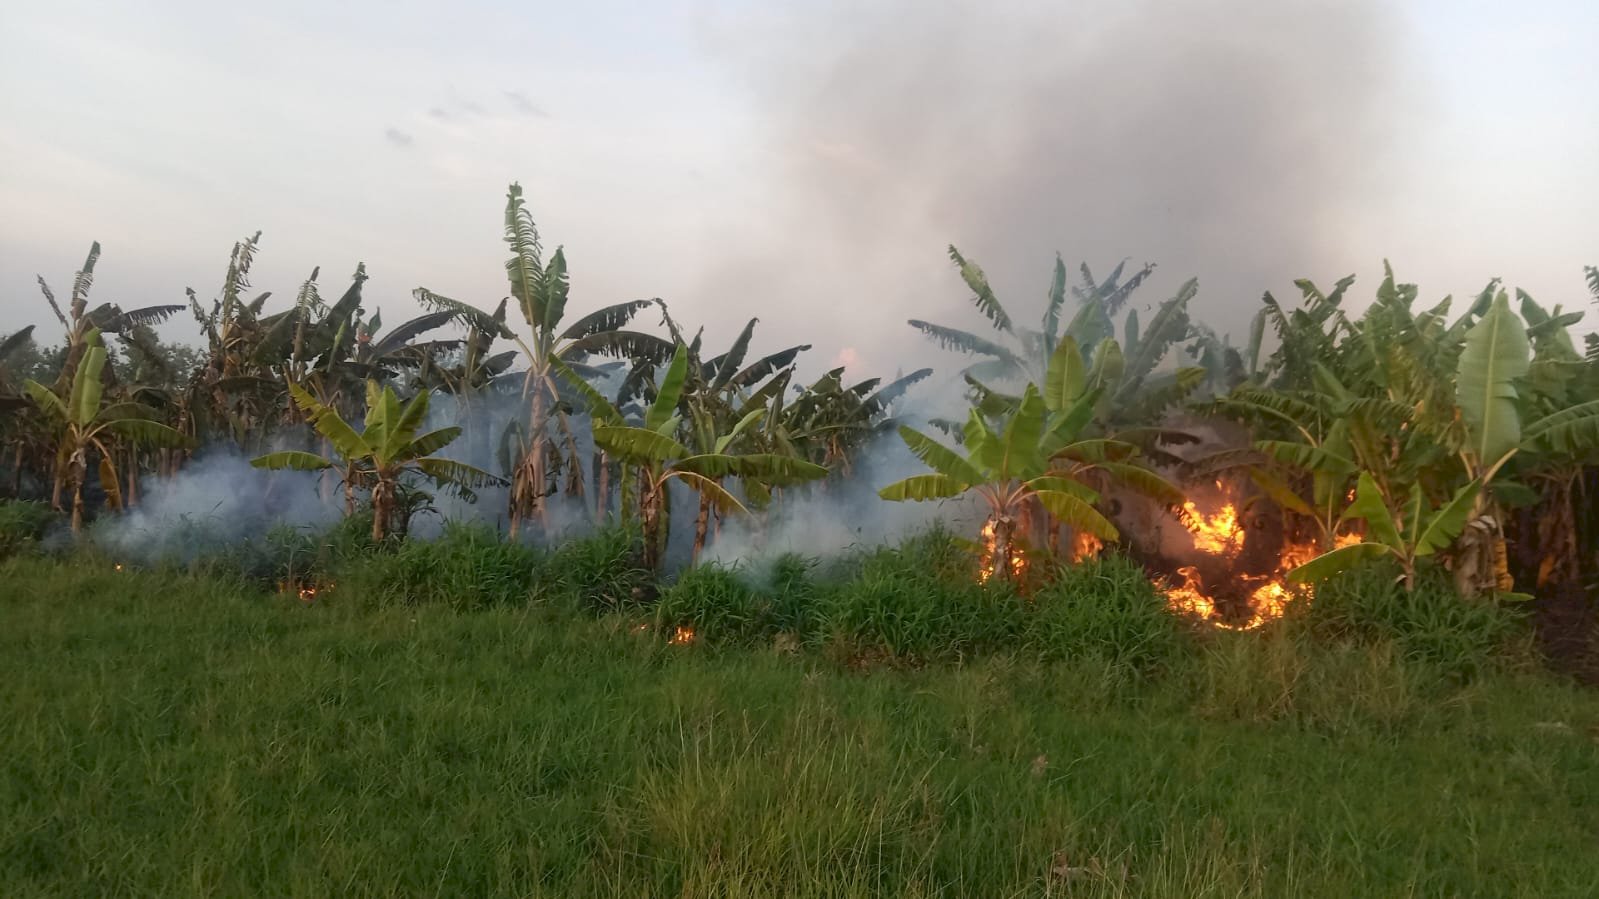 Kebakaran Lahan Pohon Pisang di Desa Gunting Kecamatan Wonosari, Akibat Puntung Rokok